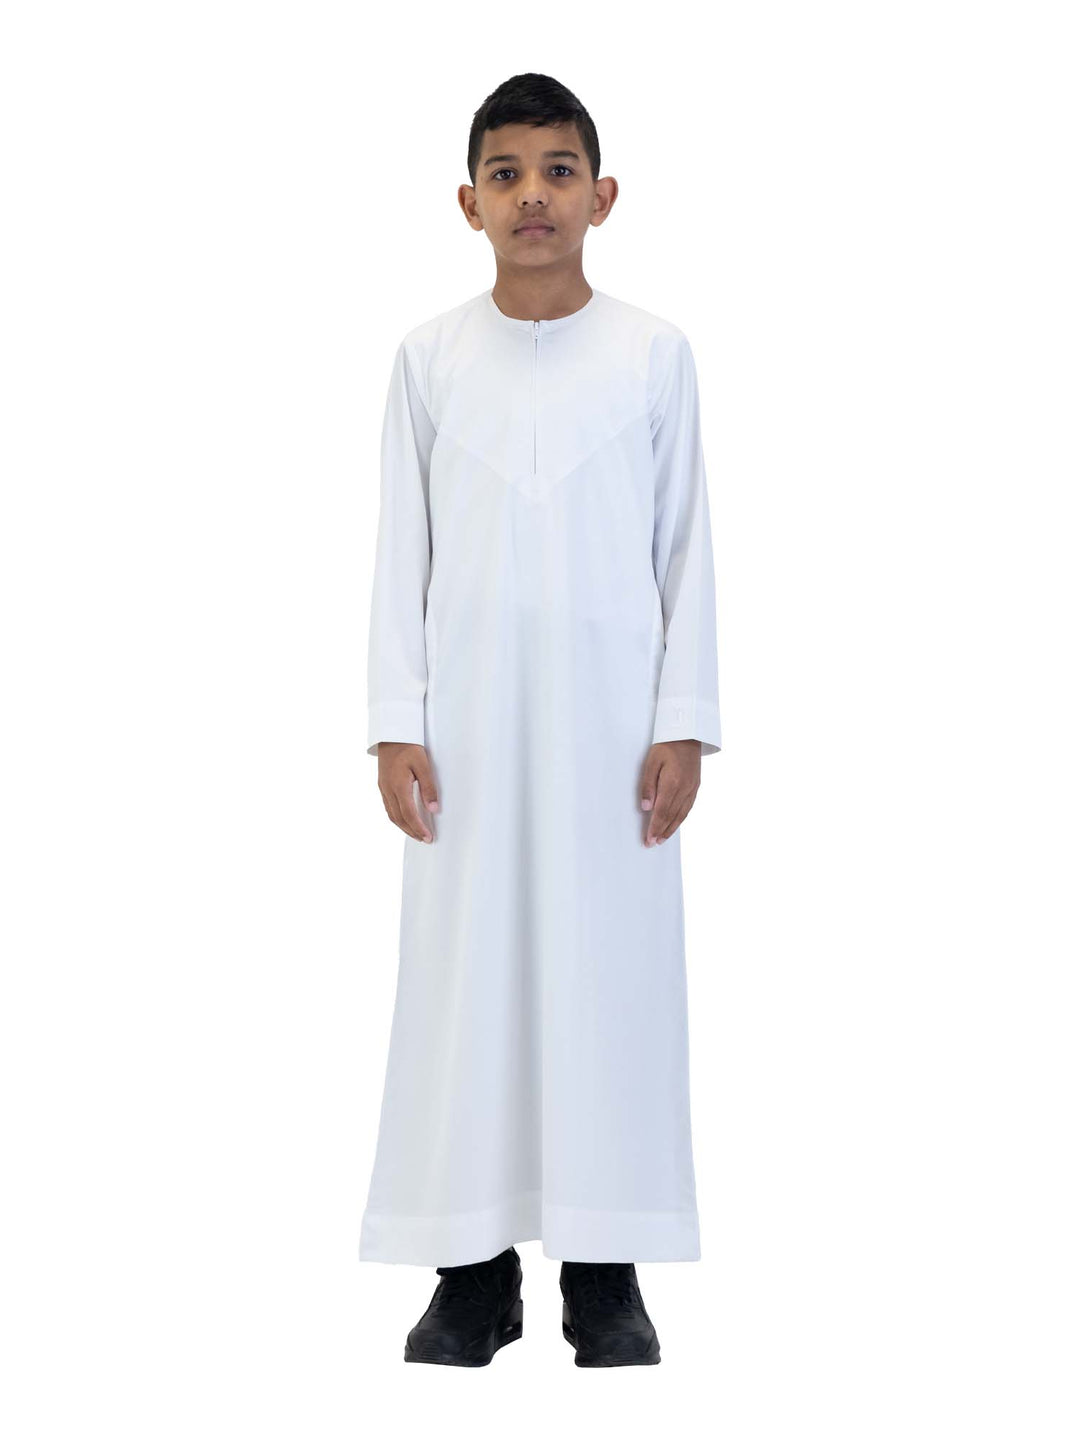 Islamic Impressions Boy's Silky Thobe With Zip